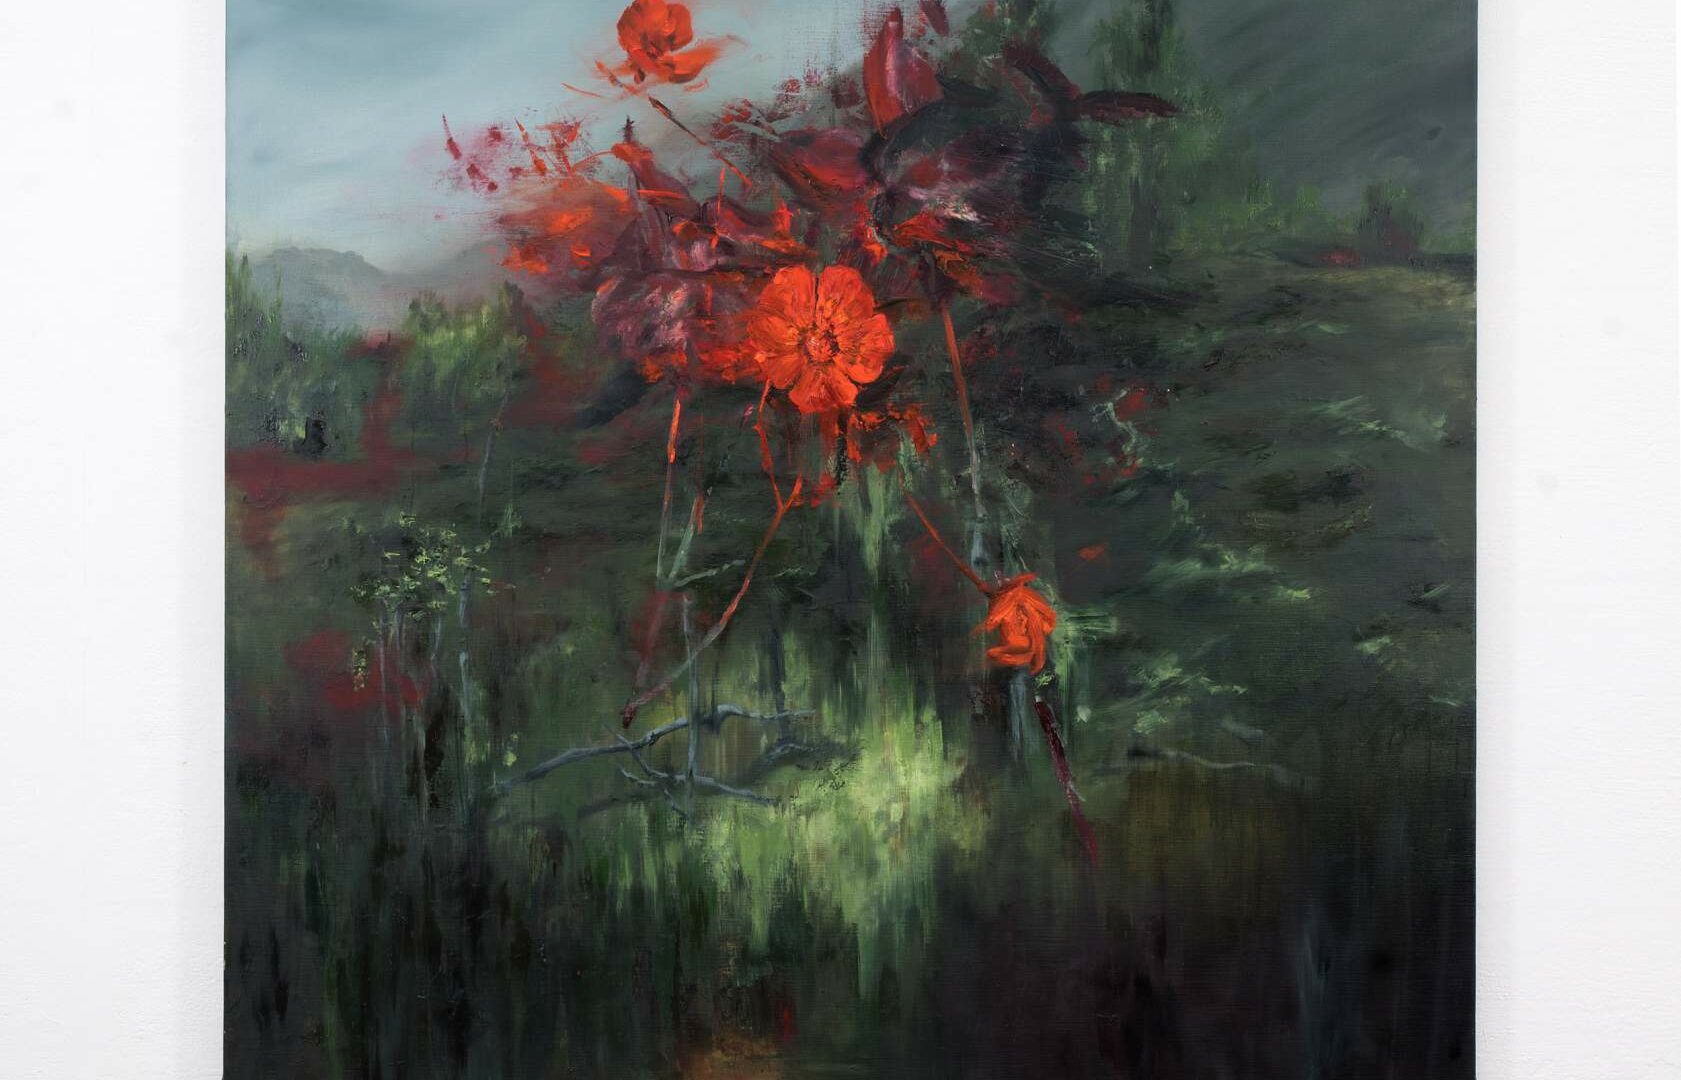 Joris Vanpoucke, When Mountains, 2020, Oil on canvas, 180 x 150 cm.